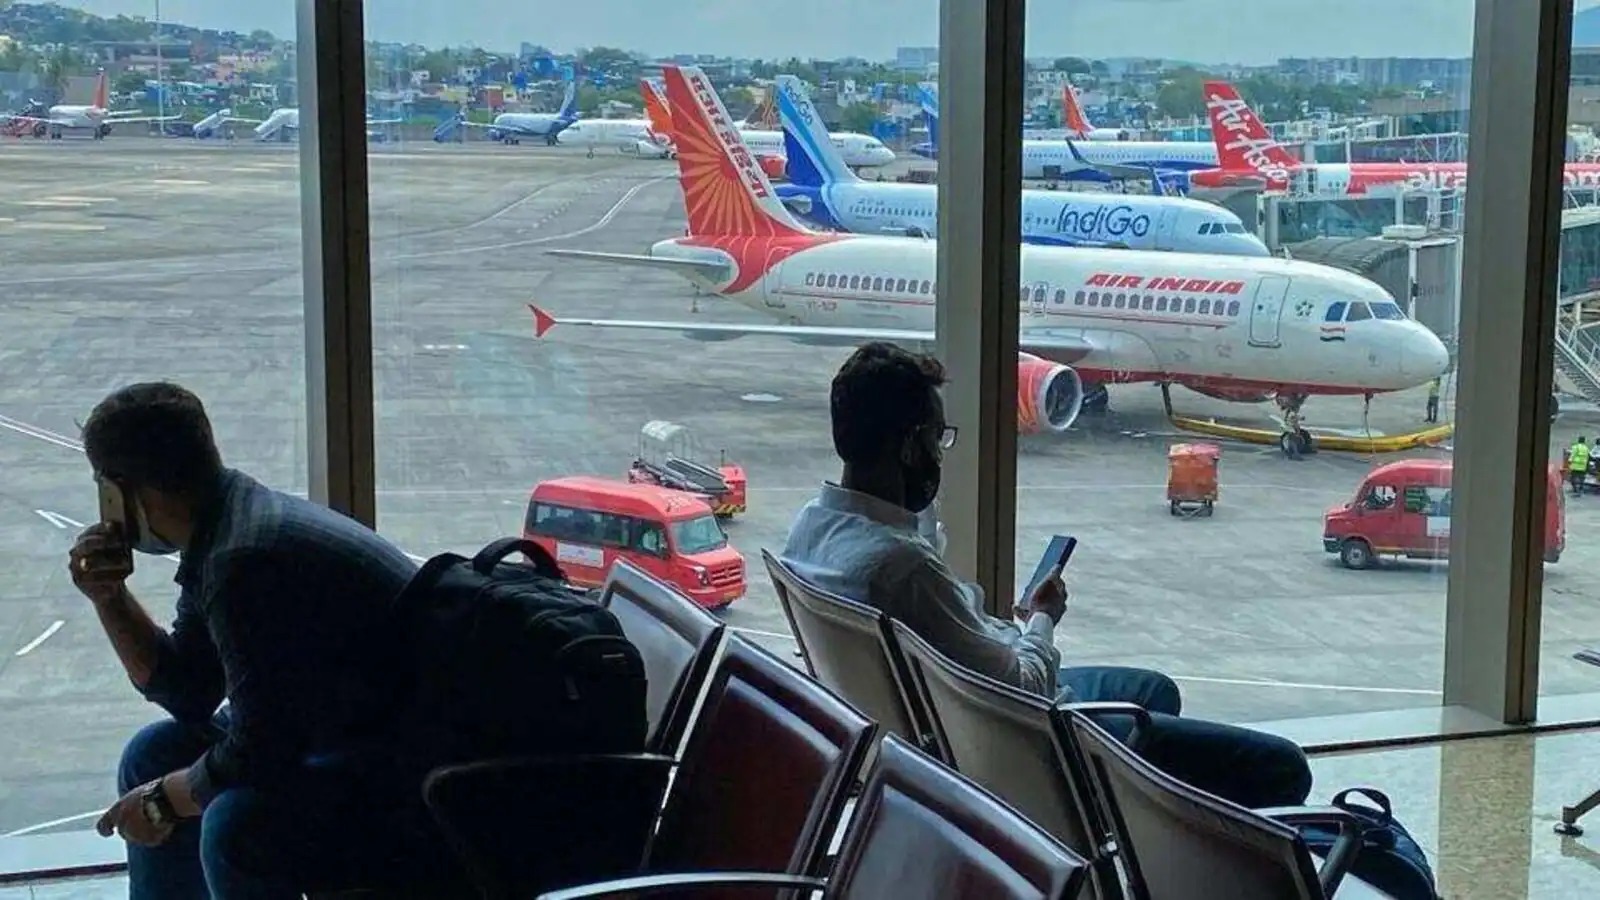 ممبئی ہوائی اڈے پر بِپرجوئے کا اثر، مسافر پریشان